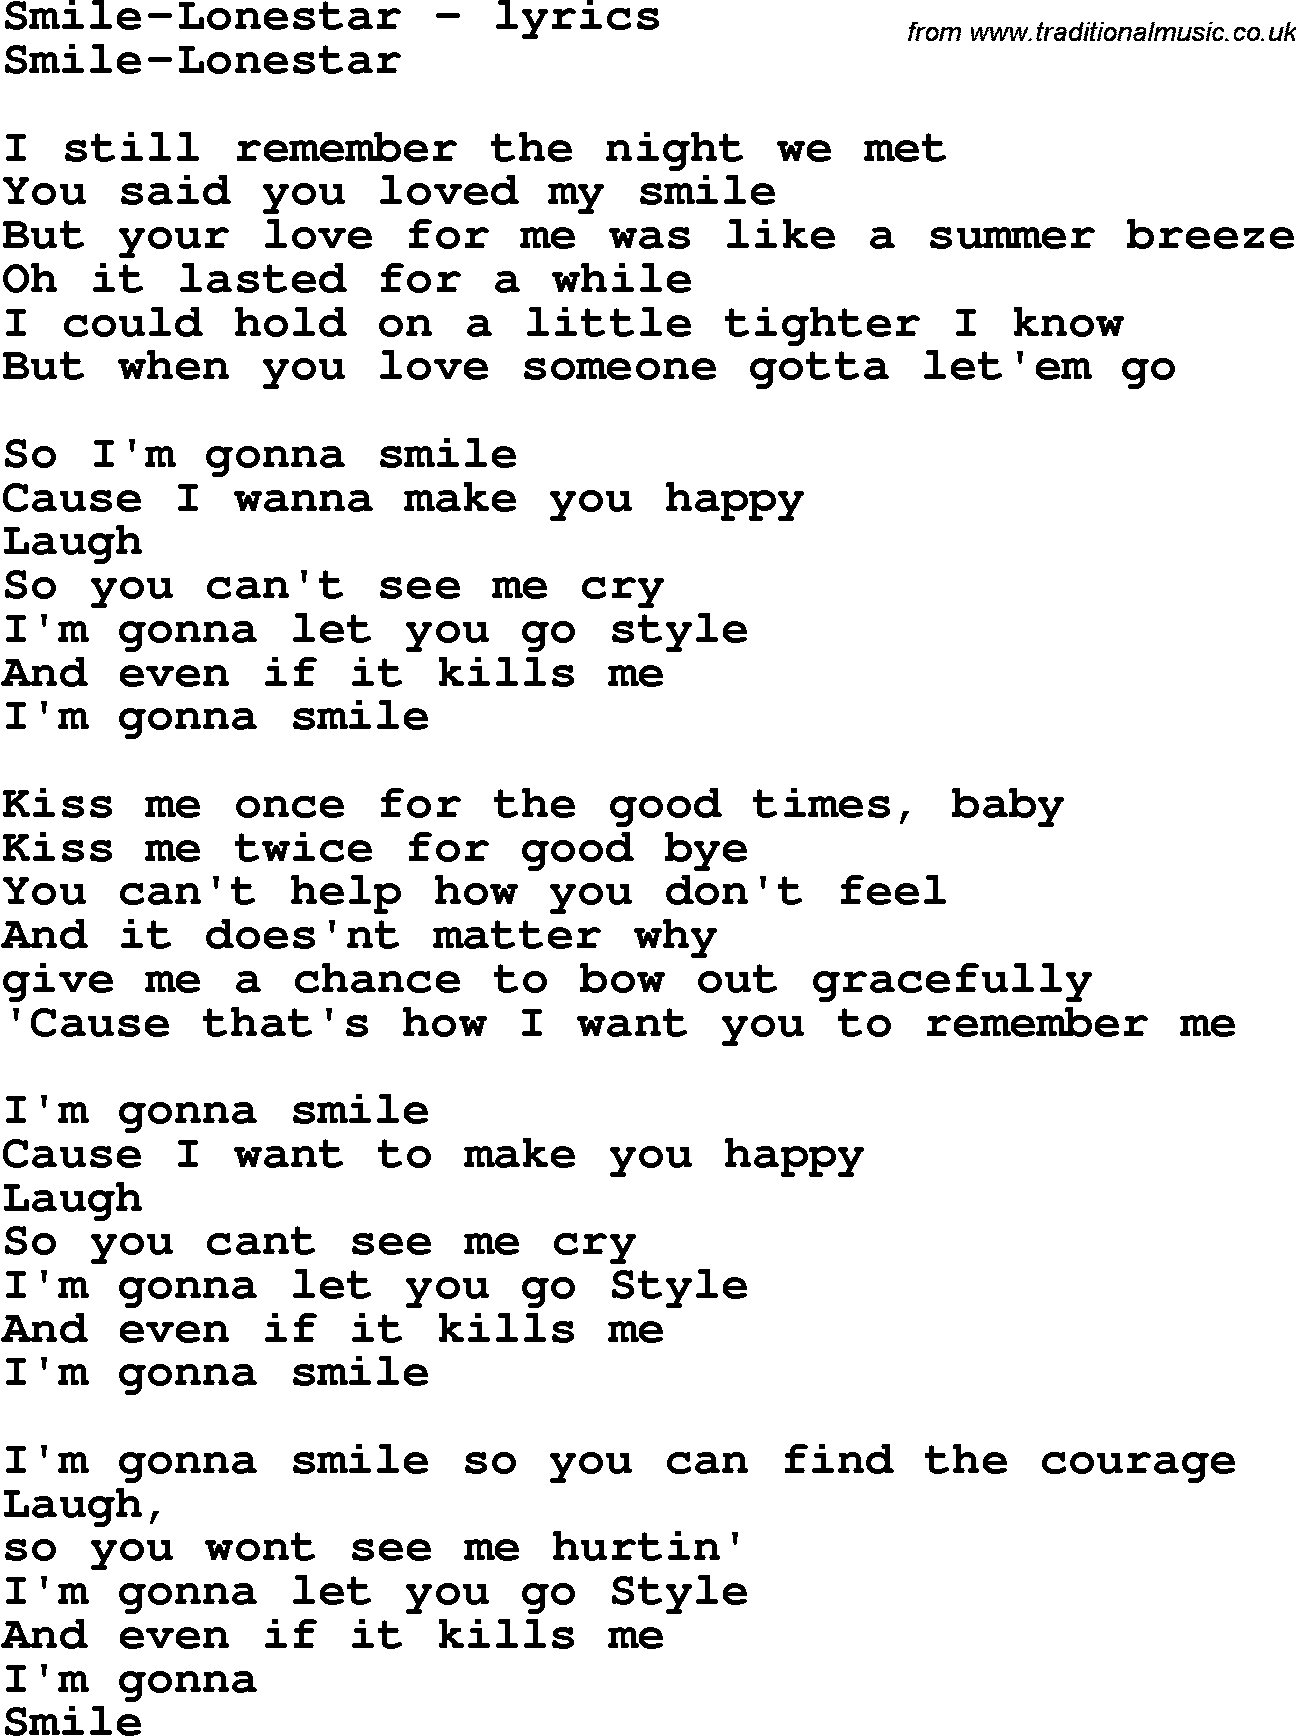 Love Song Lyrics for: Smile-Lonestar